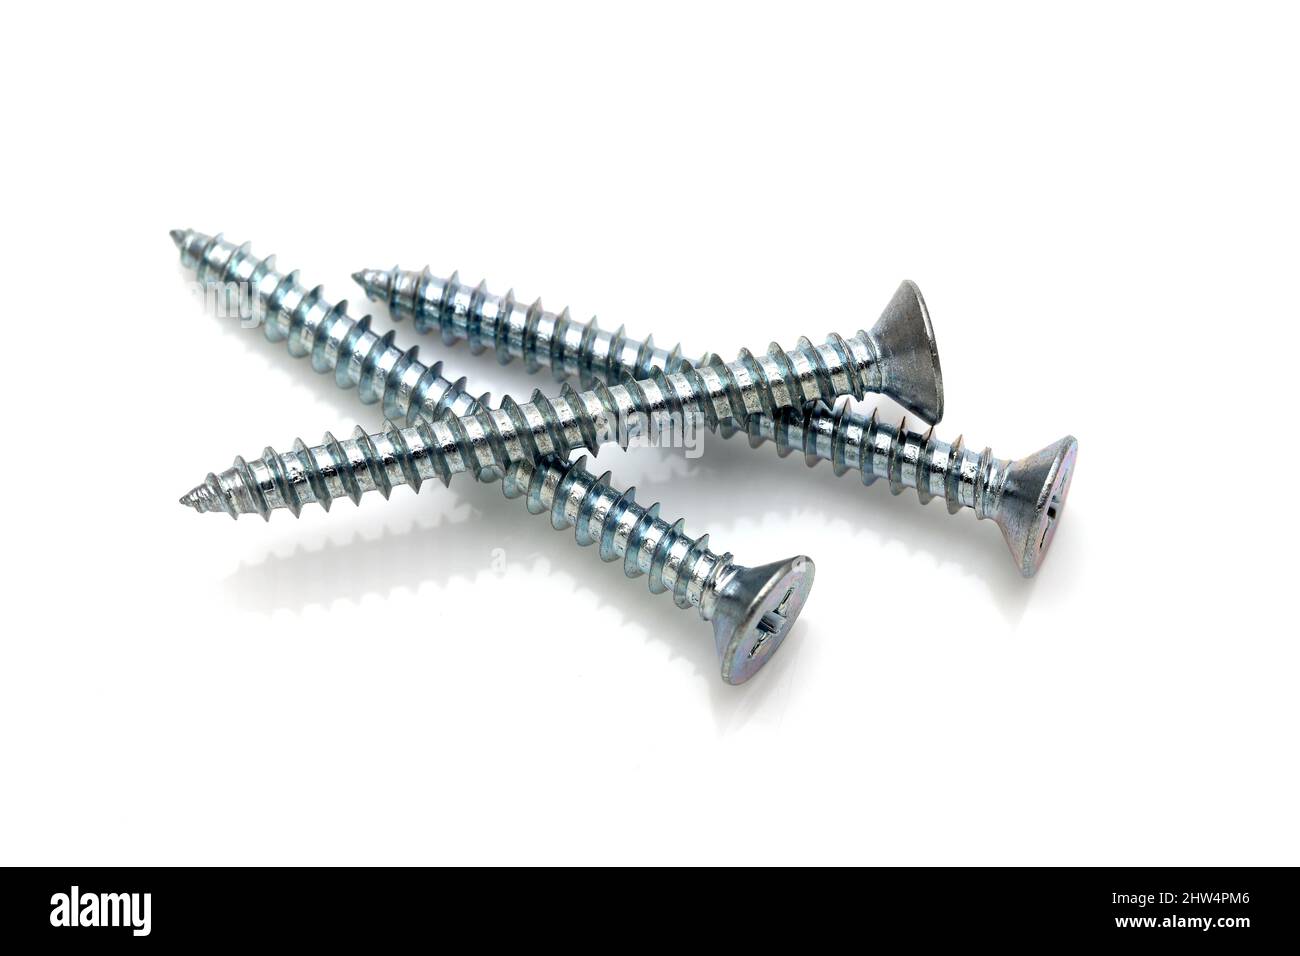 silver metallic tapping screws on white background Stock Photo